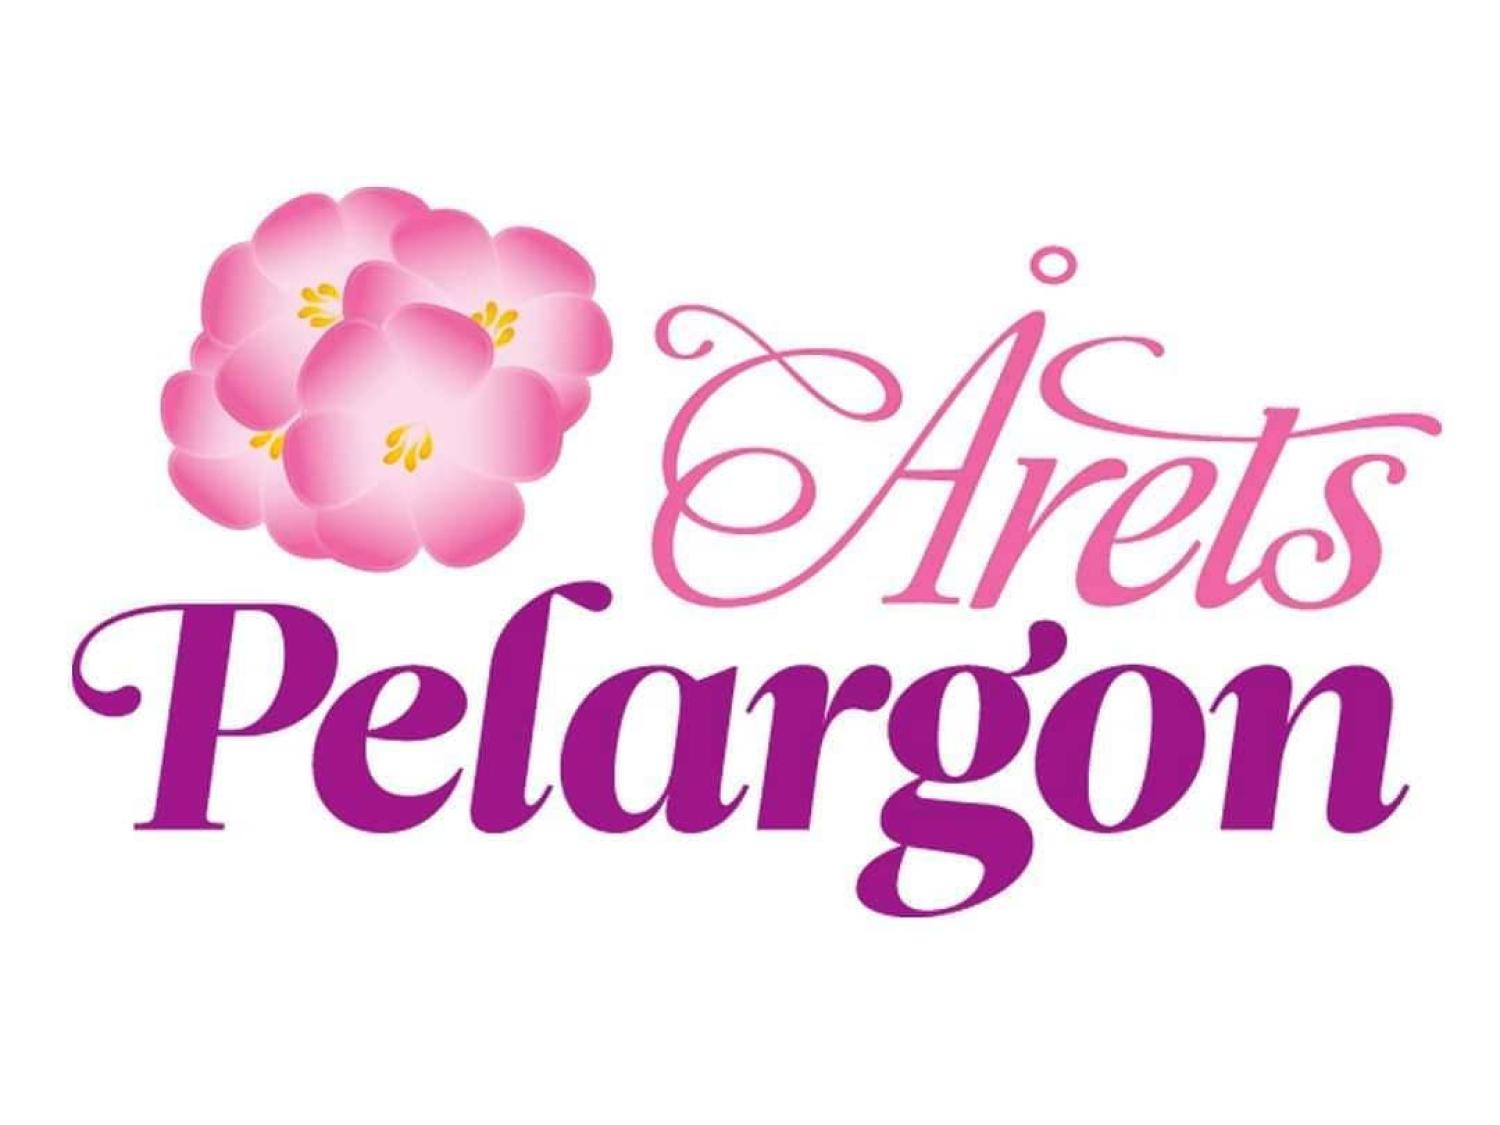 Vit bakgrund med rosa text Årets Pelargon